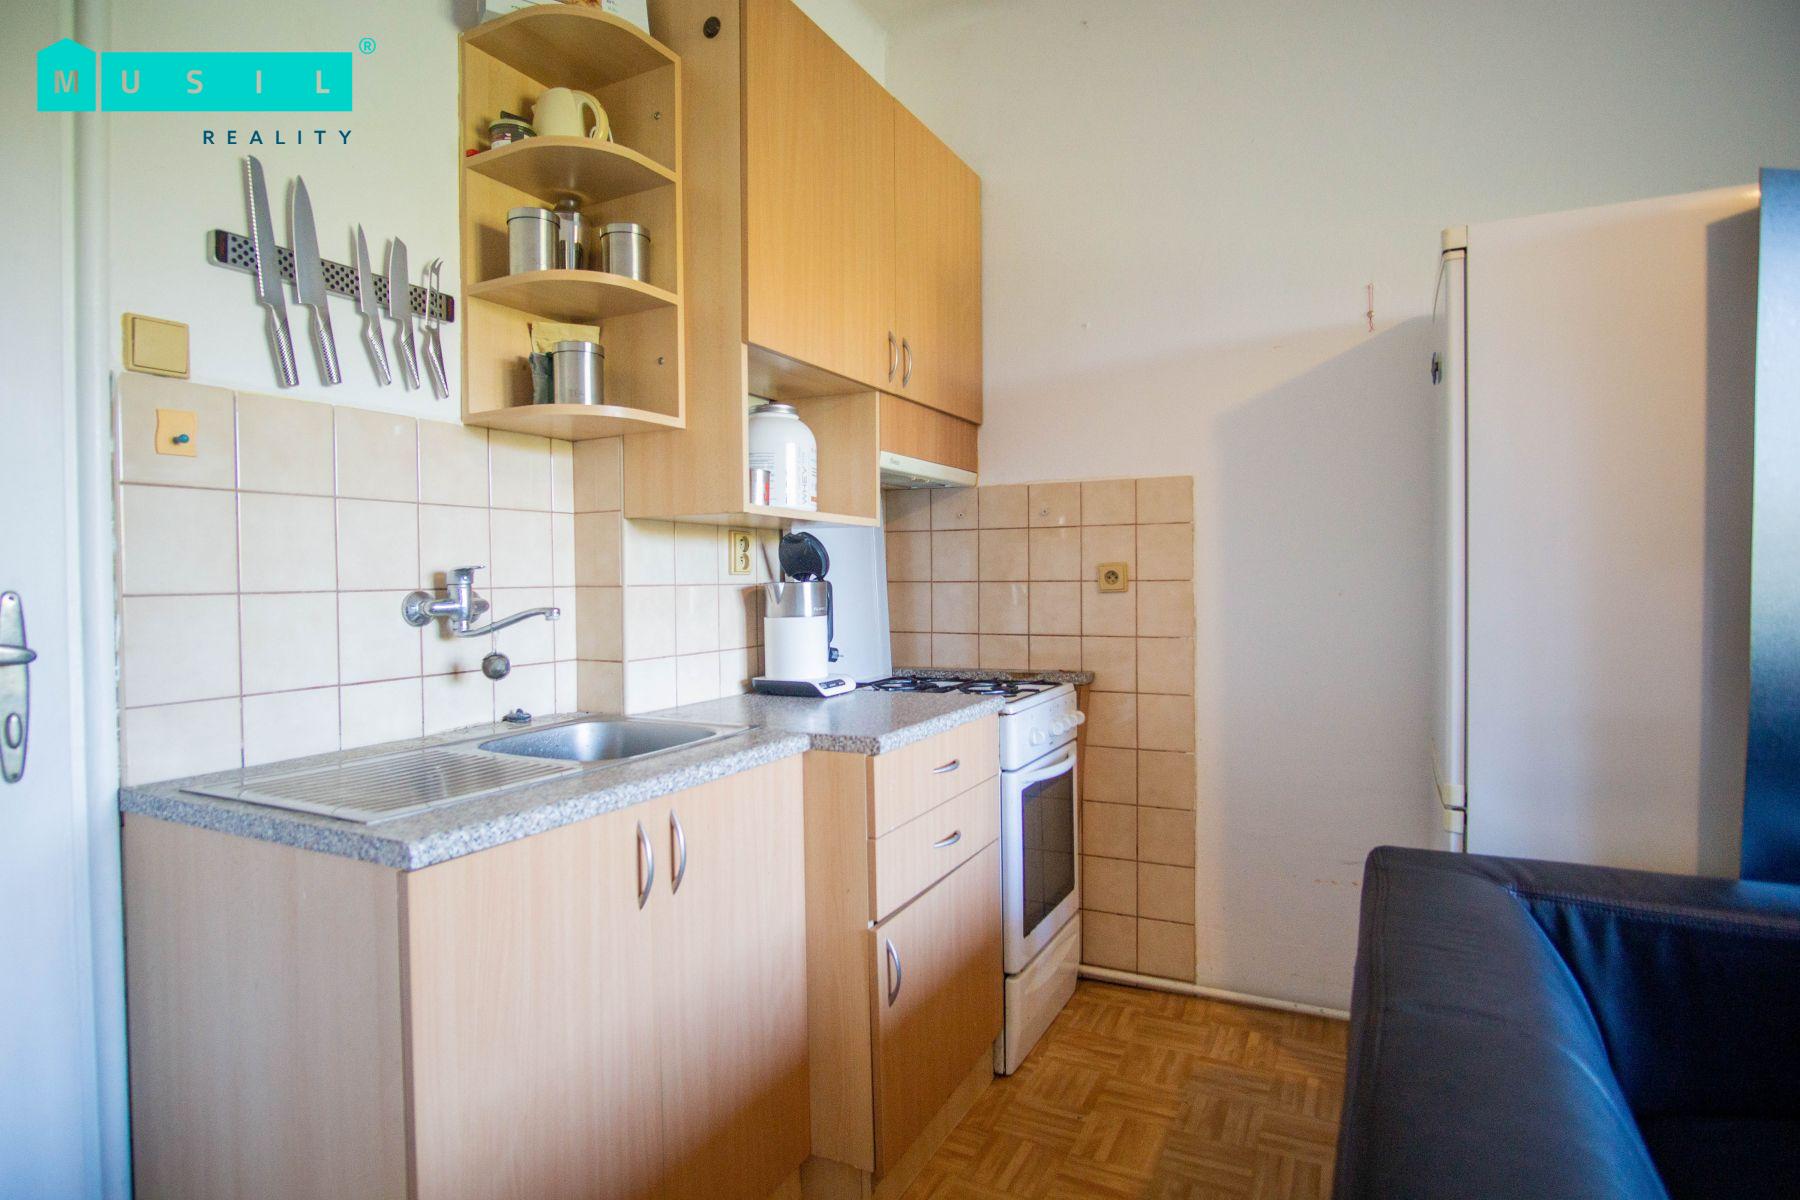 Prodej krásného slunného bytu o dispozici 1+1 nacházejícího se na ulici Wolkerova v Olomouci., obrázek č. 3